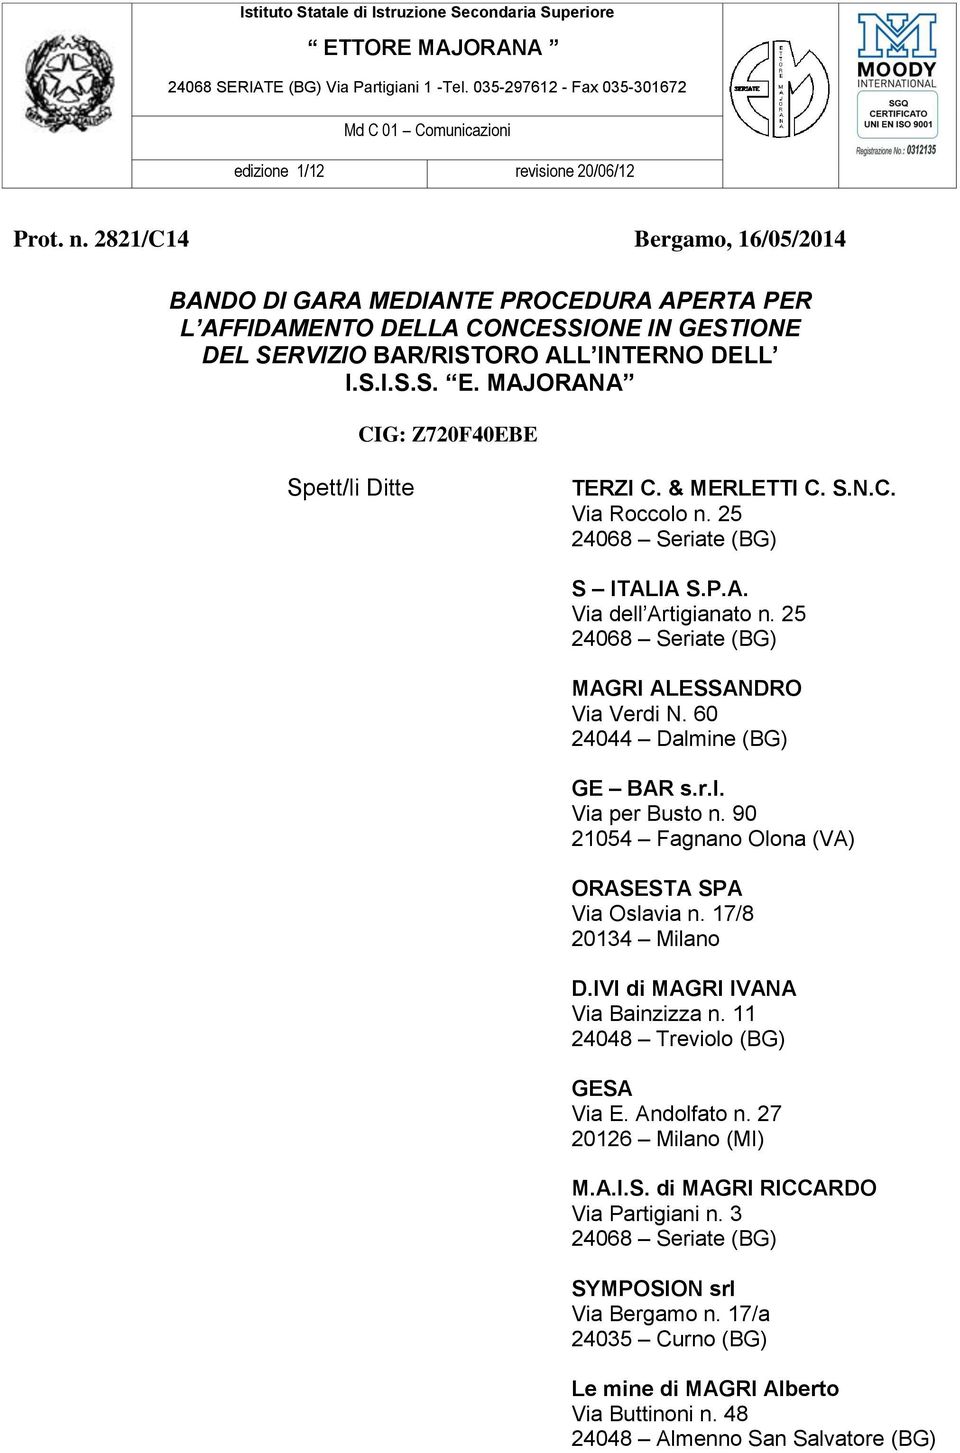 2821/C14 Bergamo, 16/05/2014 BANDO DI GARA MEDIANTE PROCEDURA APERTA PER L AFFIDAMENTO DELLA CONCESSIONE IN GESTIONE DEL SERVIZIO BAR/RISTORO ALL INTERNO DELL I.S.I.S.S. E.